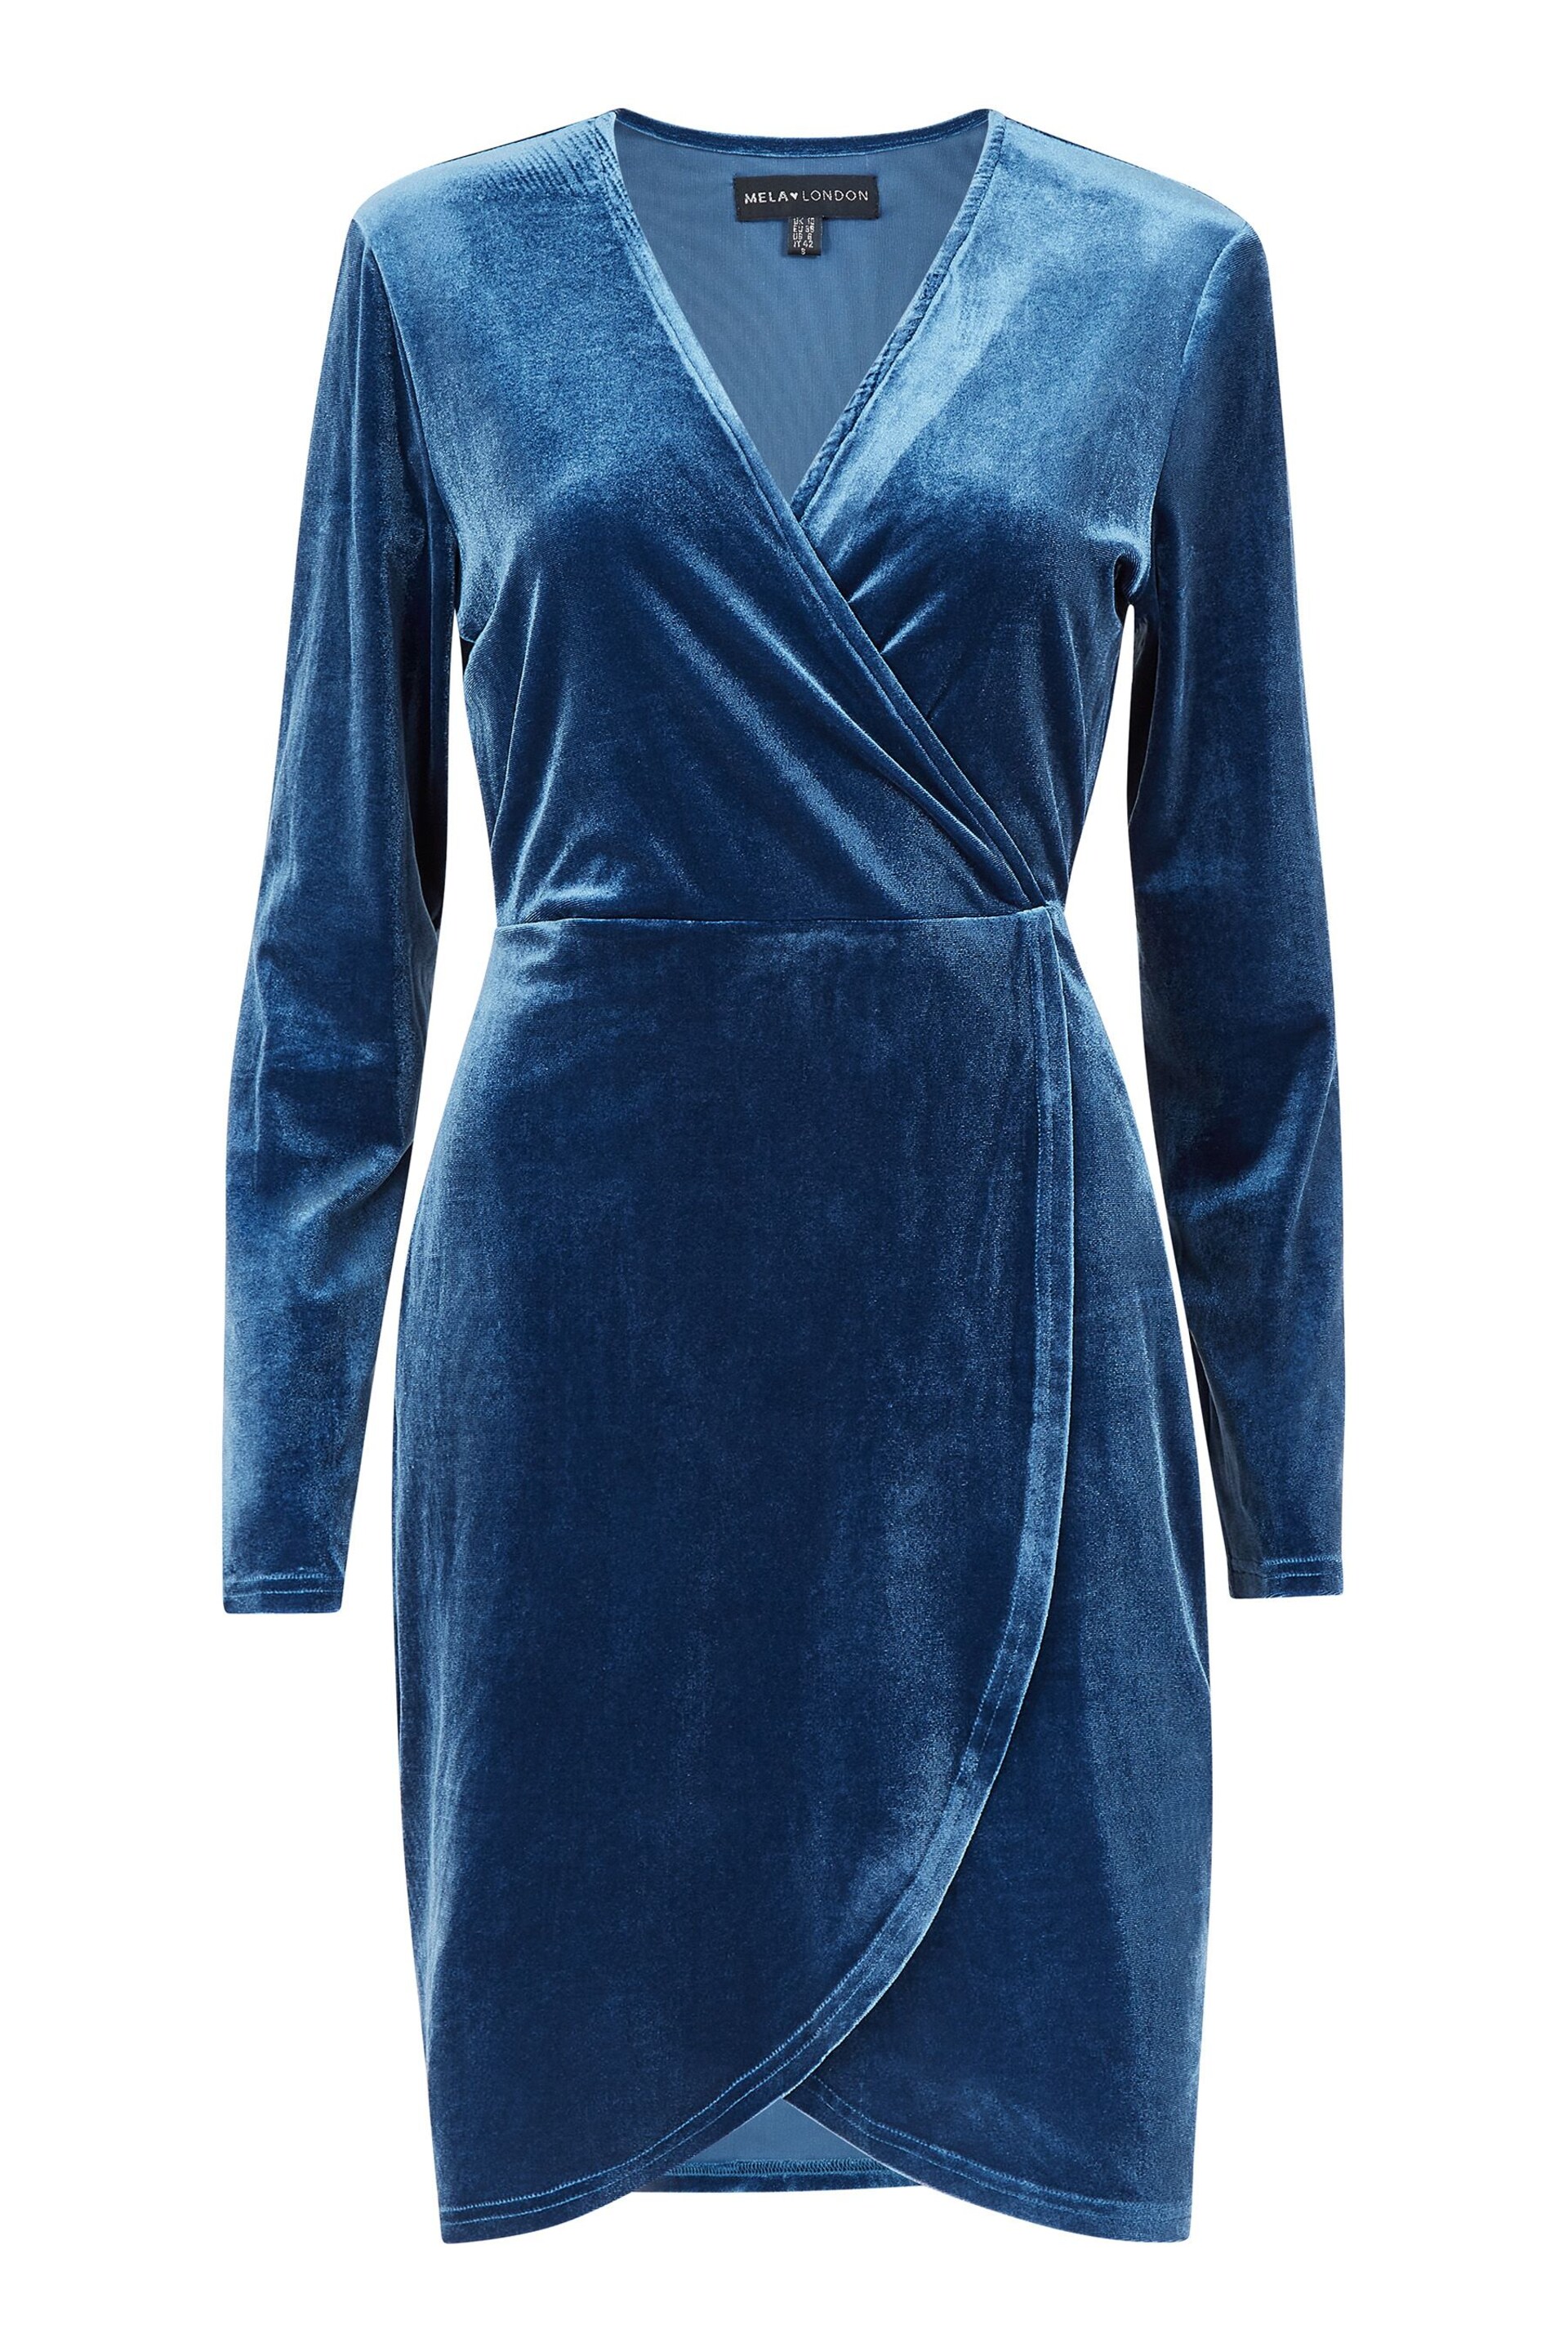 Mela Blue Velvet Wrap Dress - Image 4 of 4